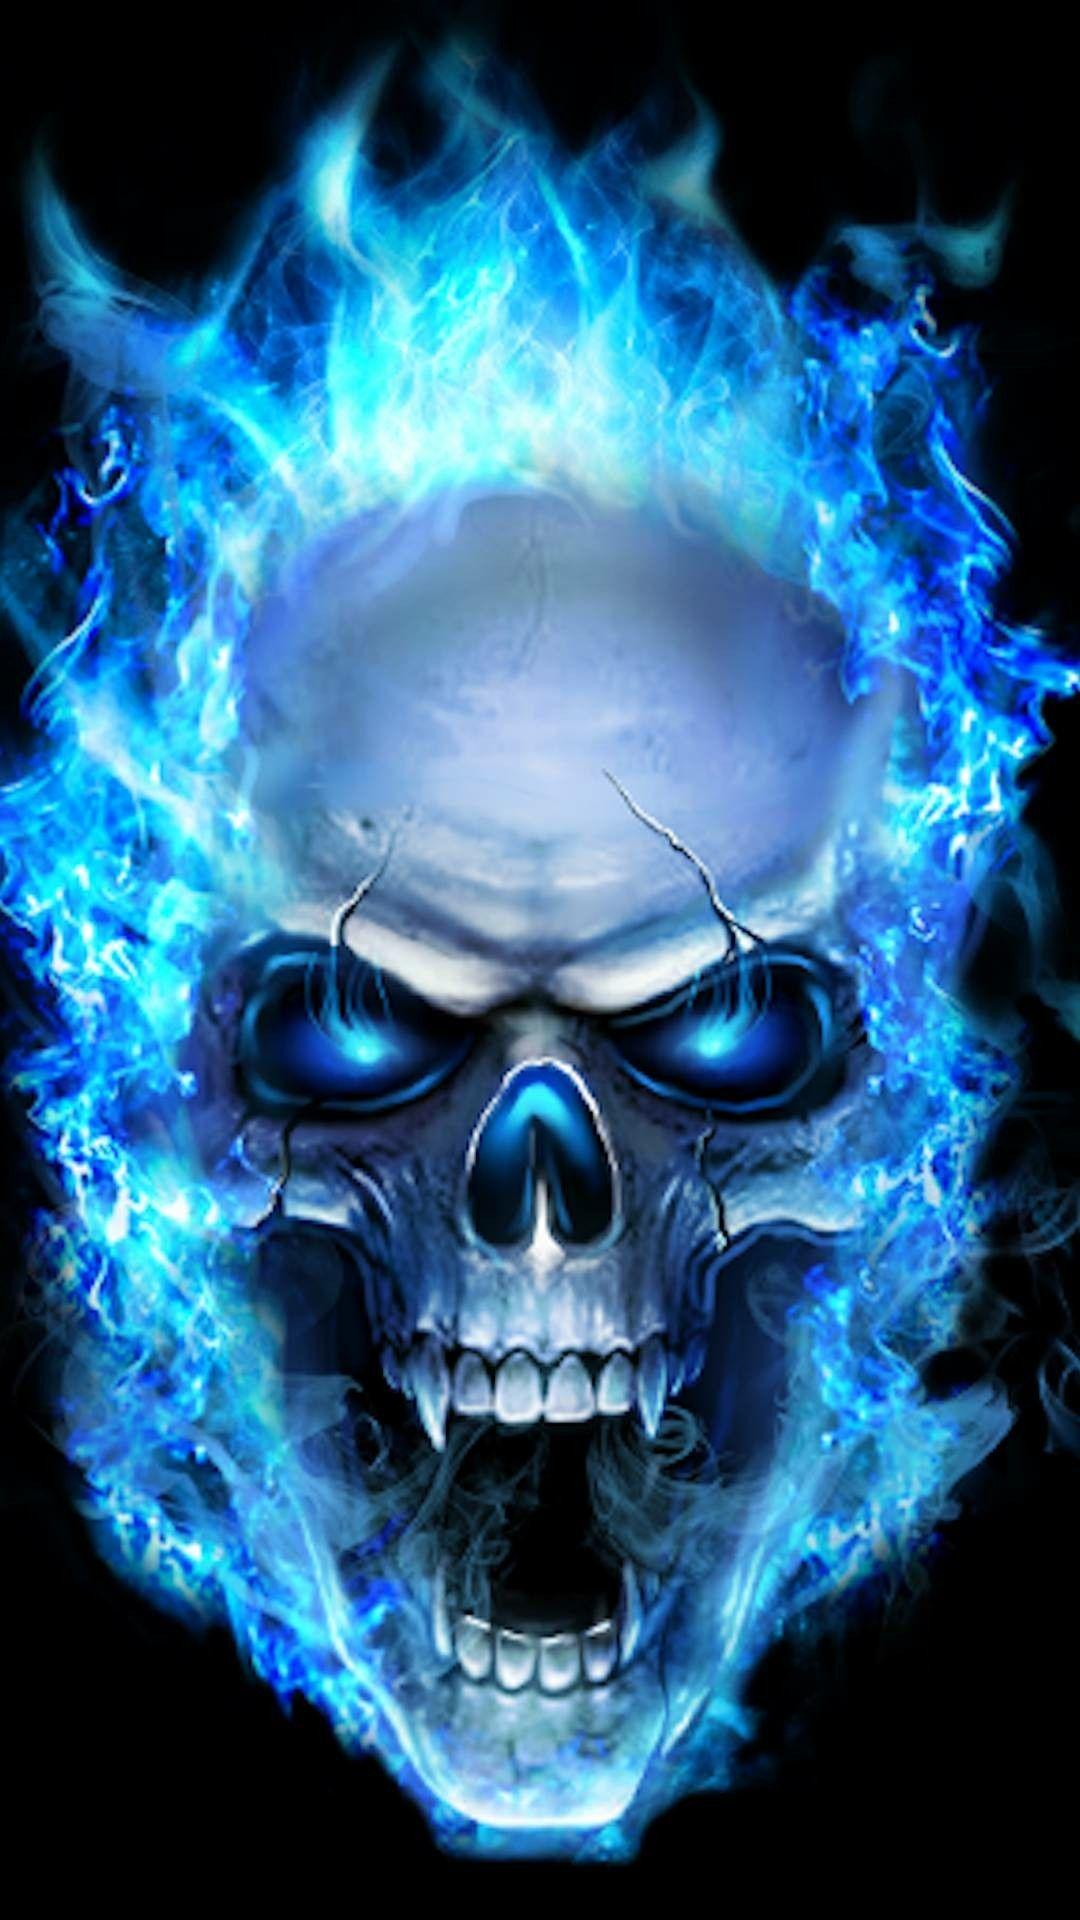 Blue flame skull. Skull wallpaper, Sugar skull wallpaper, Skull artwork